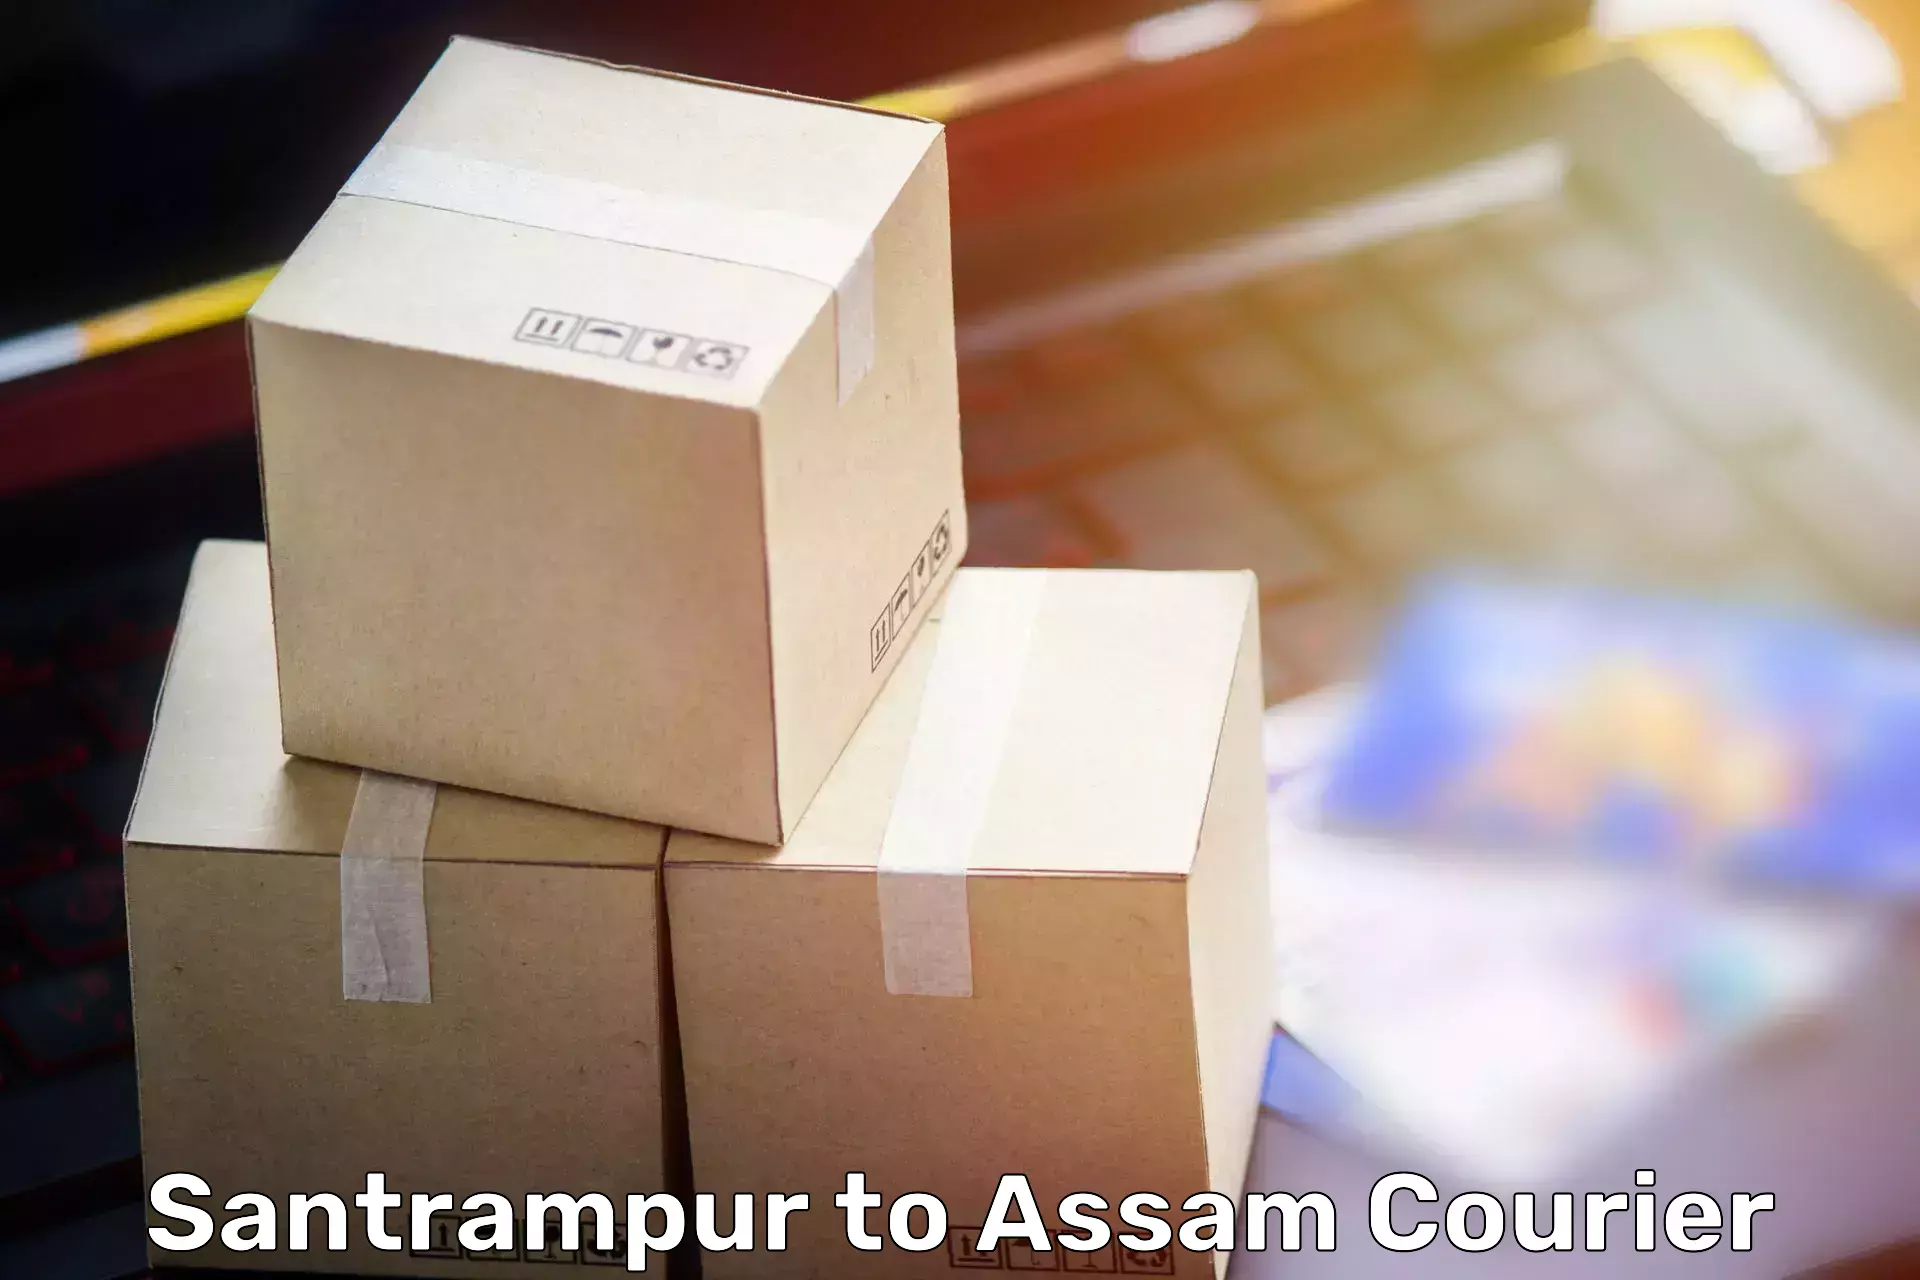 Furniture moving service Santrampur to Teok